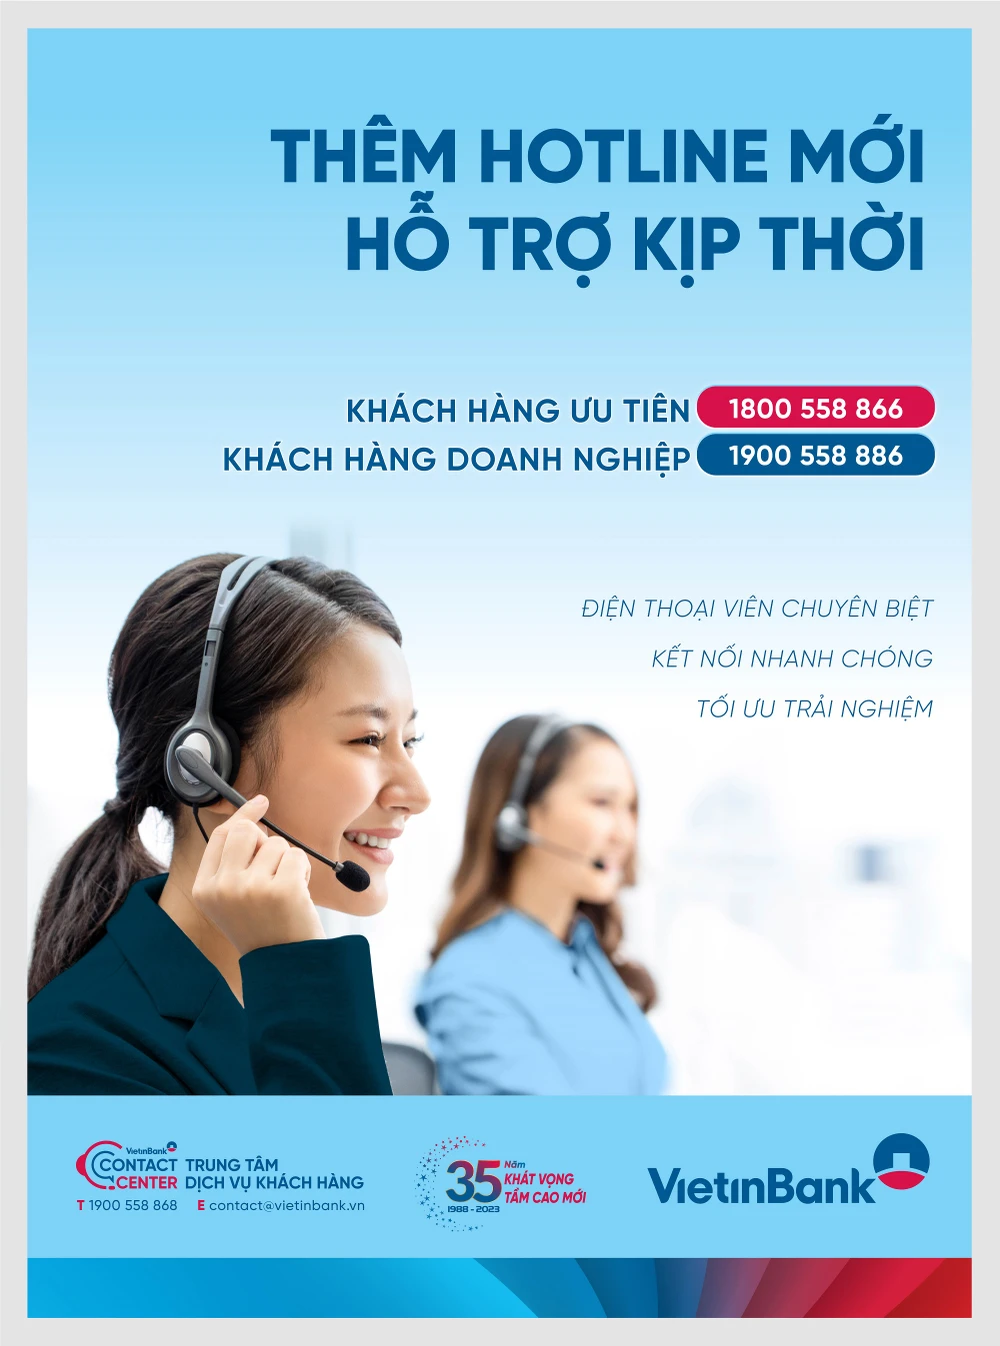 VietinBank ra mắt hotline dành cho khách hàng ưu tiên và khách hàng doanh nghiệp